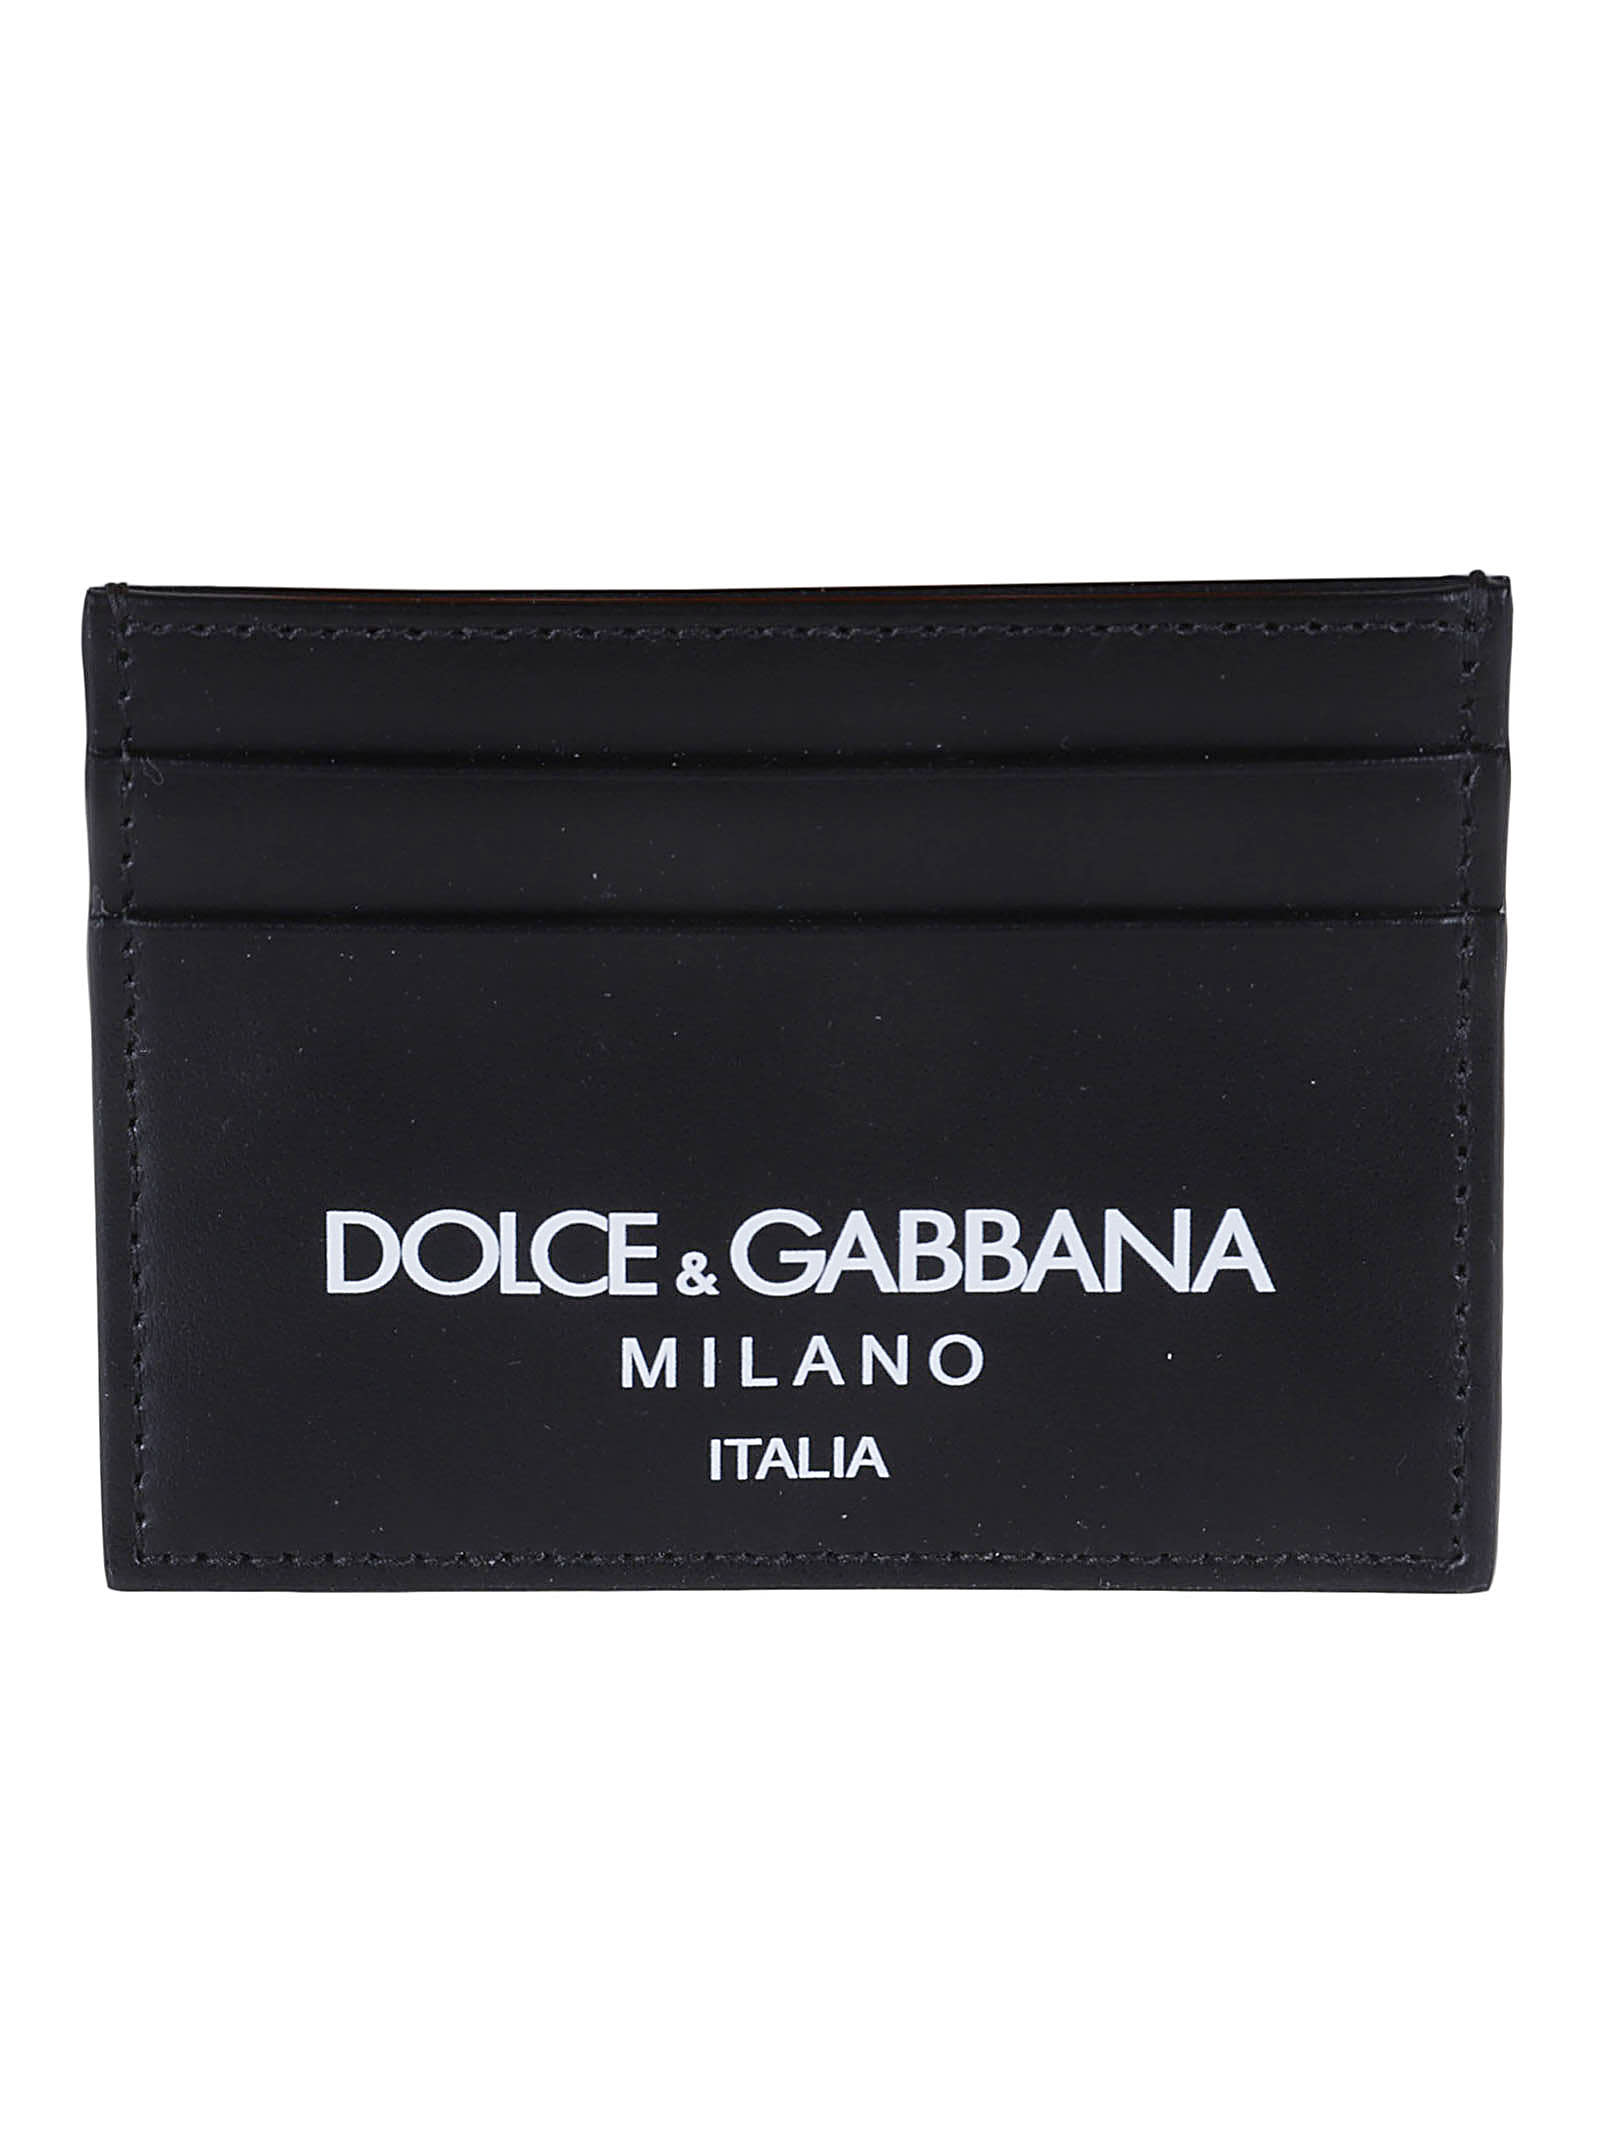 DOLCE & GABBANA MILANO LOGO CARD HOLDER